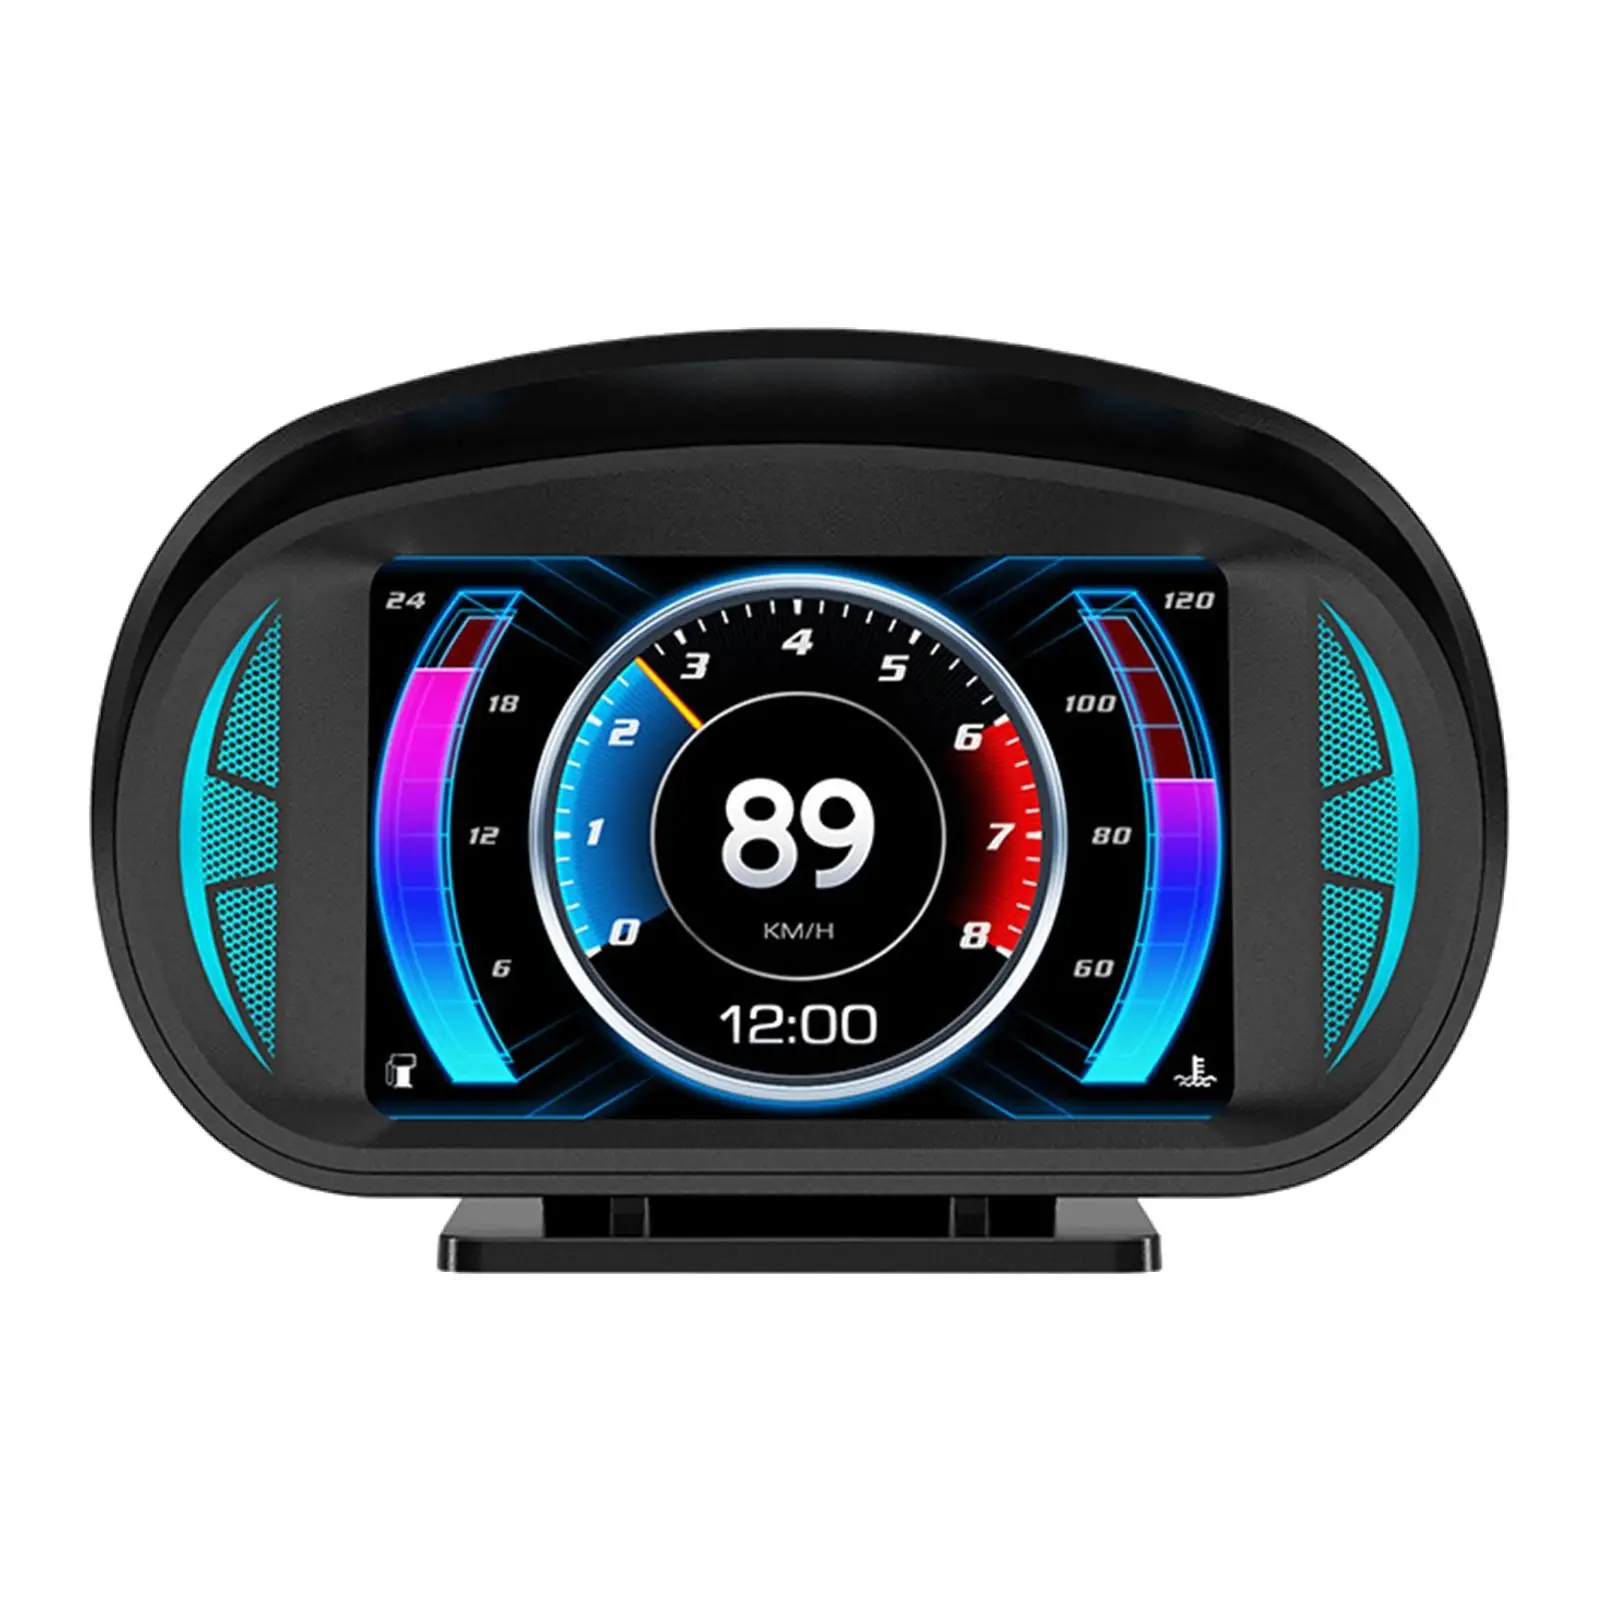 

Автомобильный дисплей HUD на лобовом стекле, Универсальный Датчик OBD + GPS, датчик температуры воды, превышение скорости, спидометр